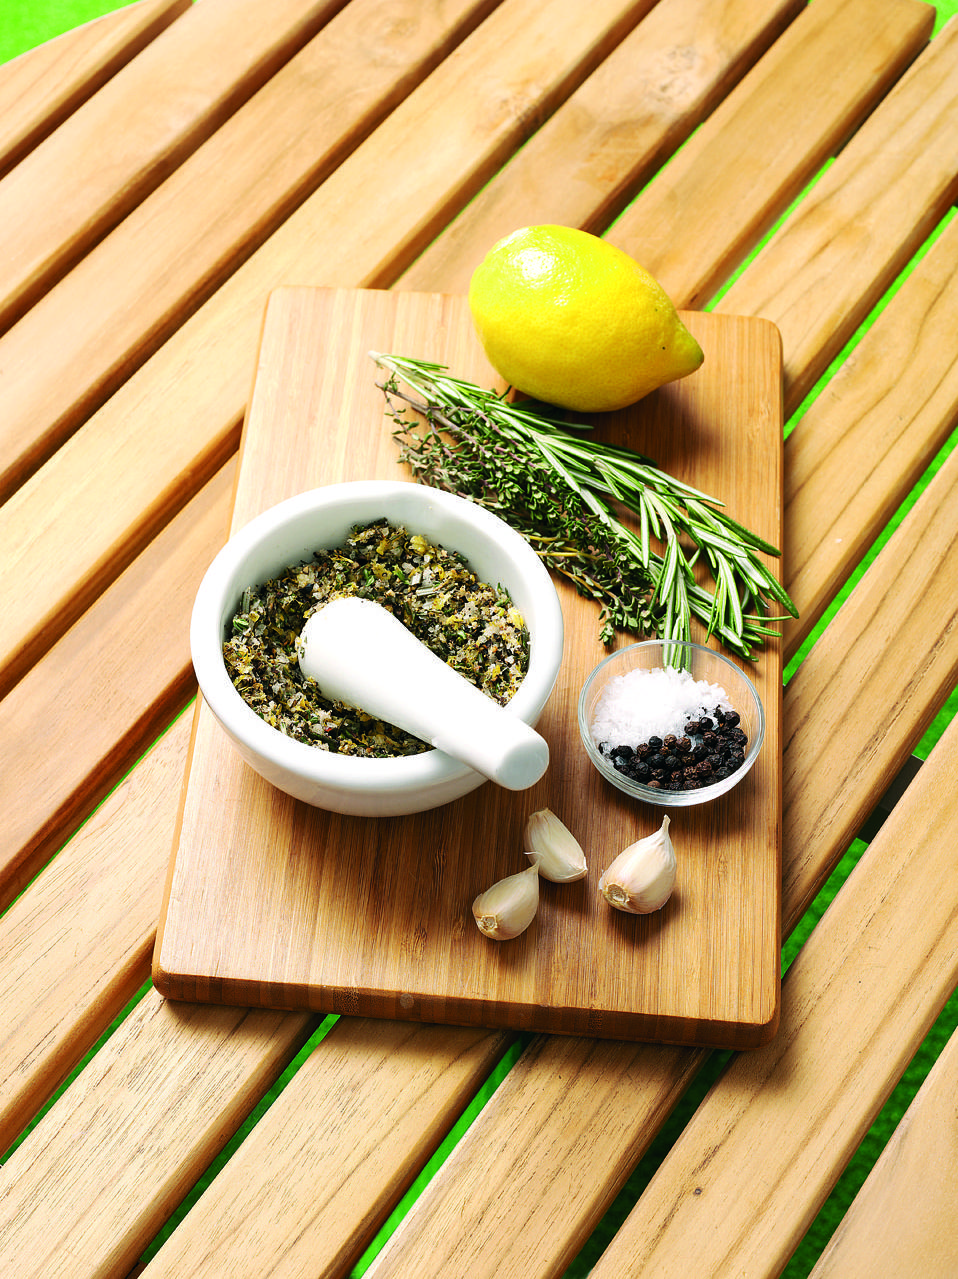 Lemon and herb rub recipe